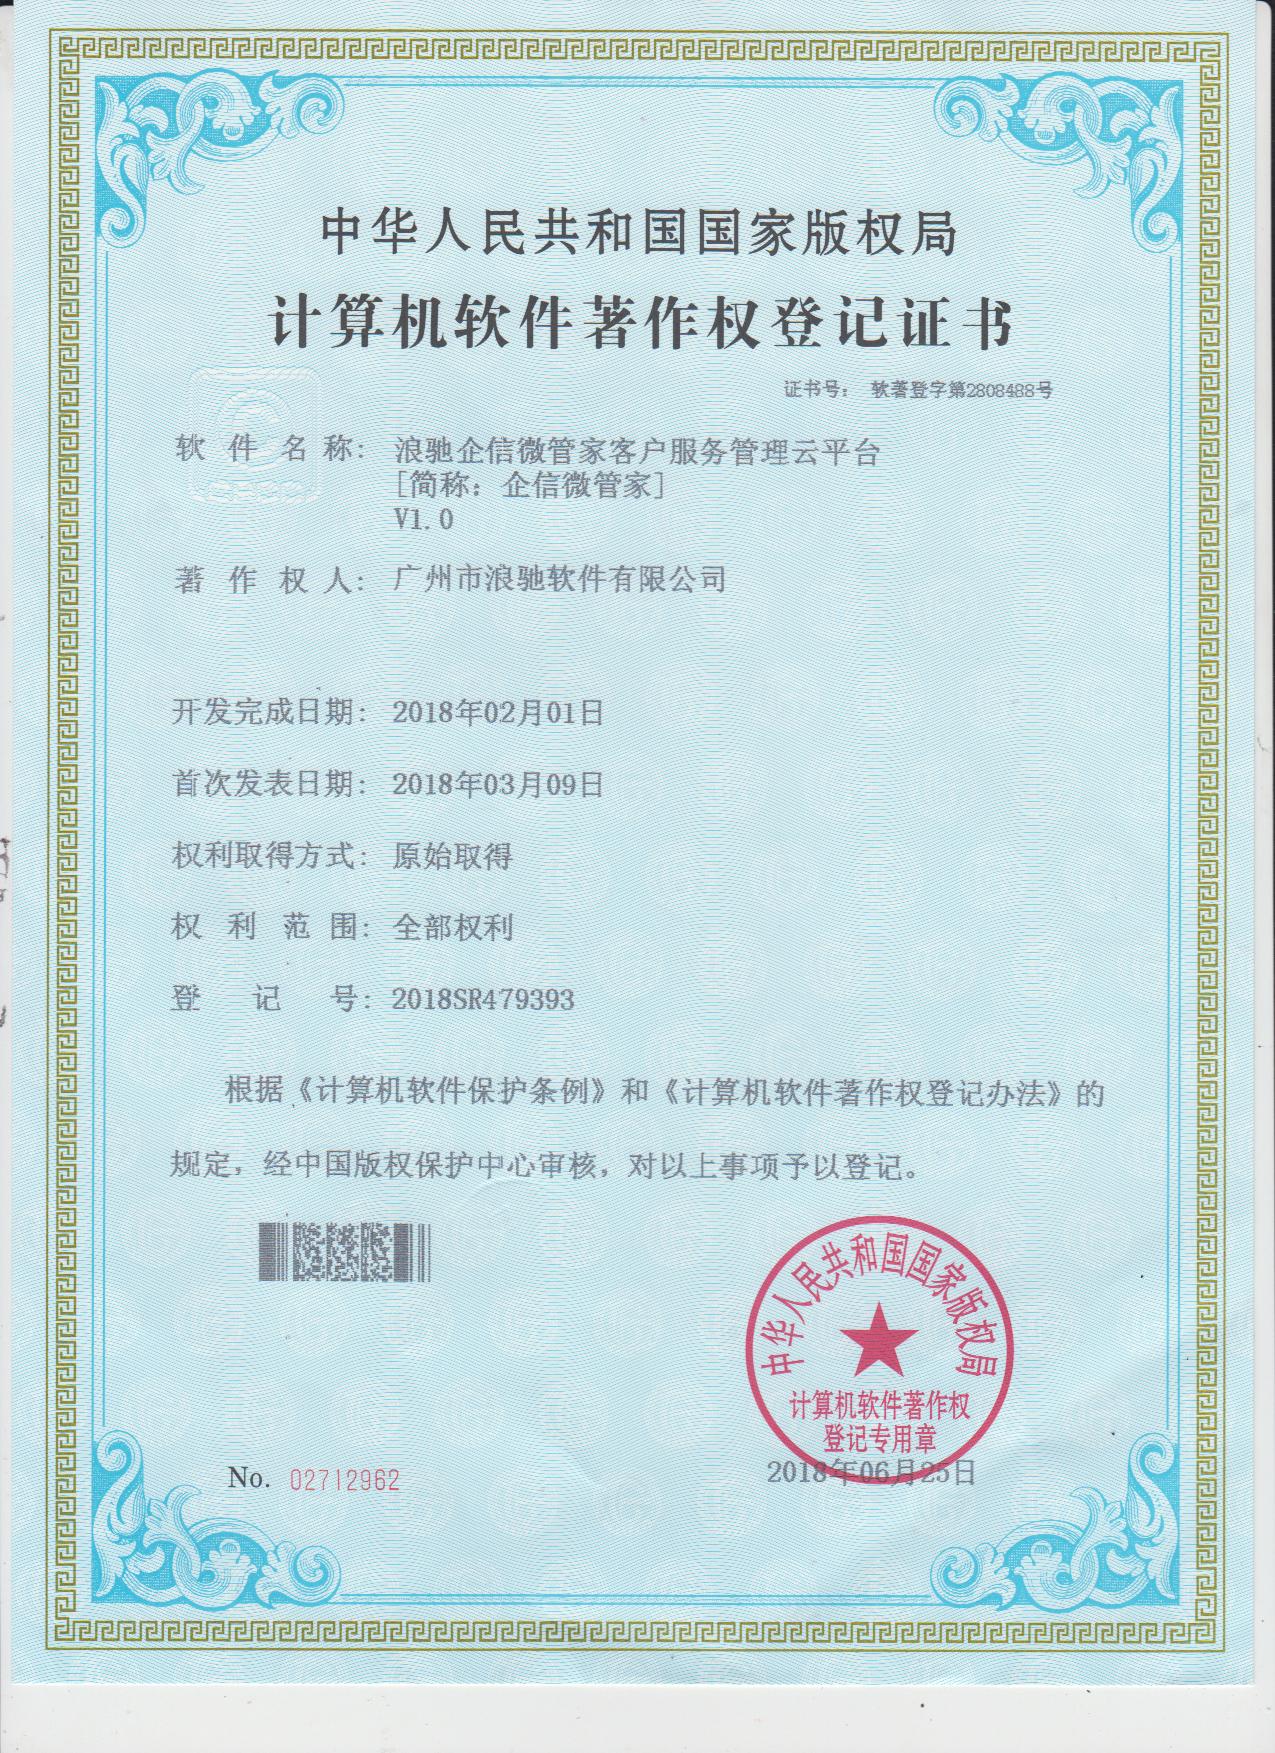 企信微管家计算机软件著作权登记证书